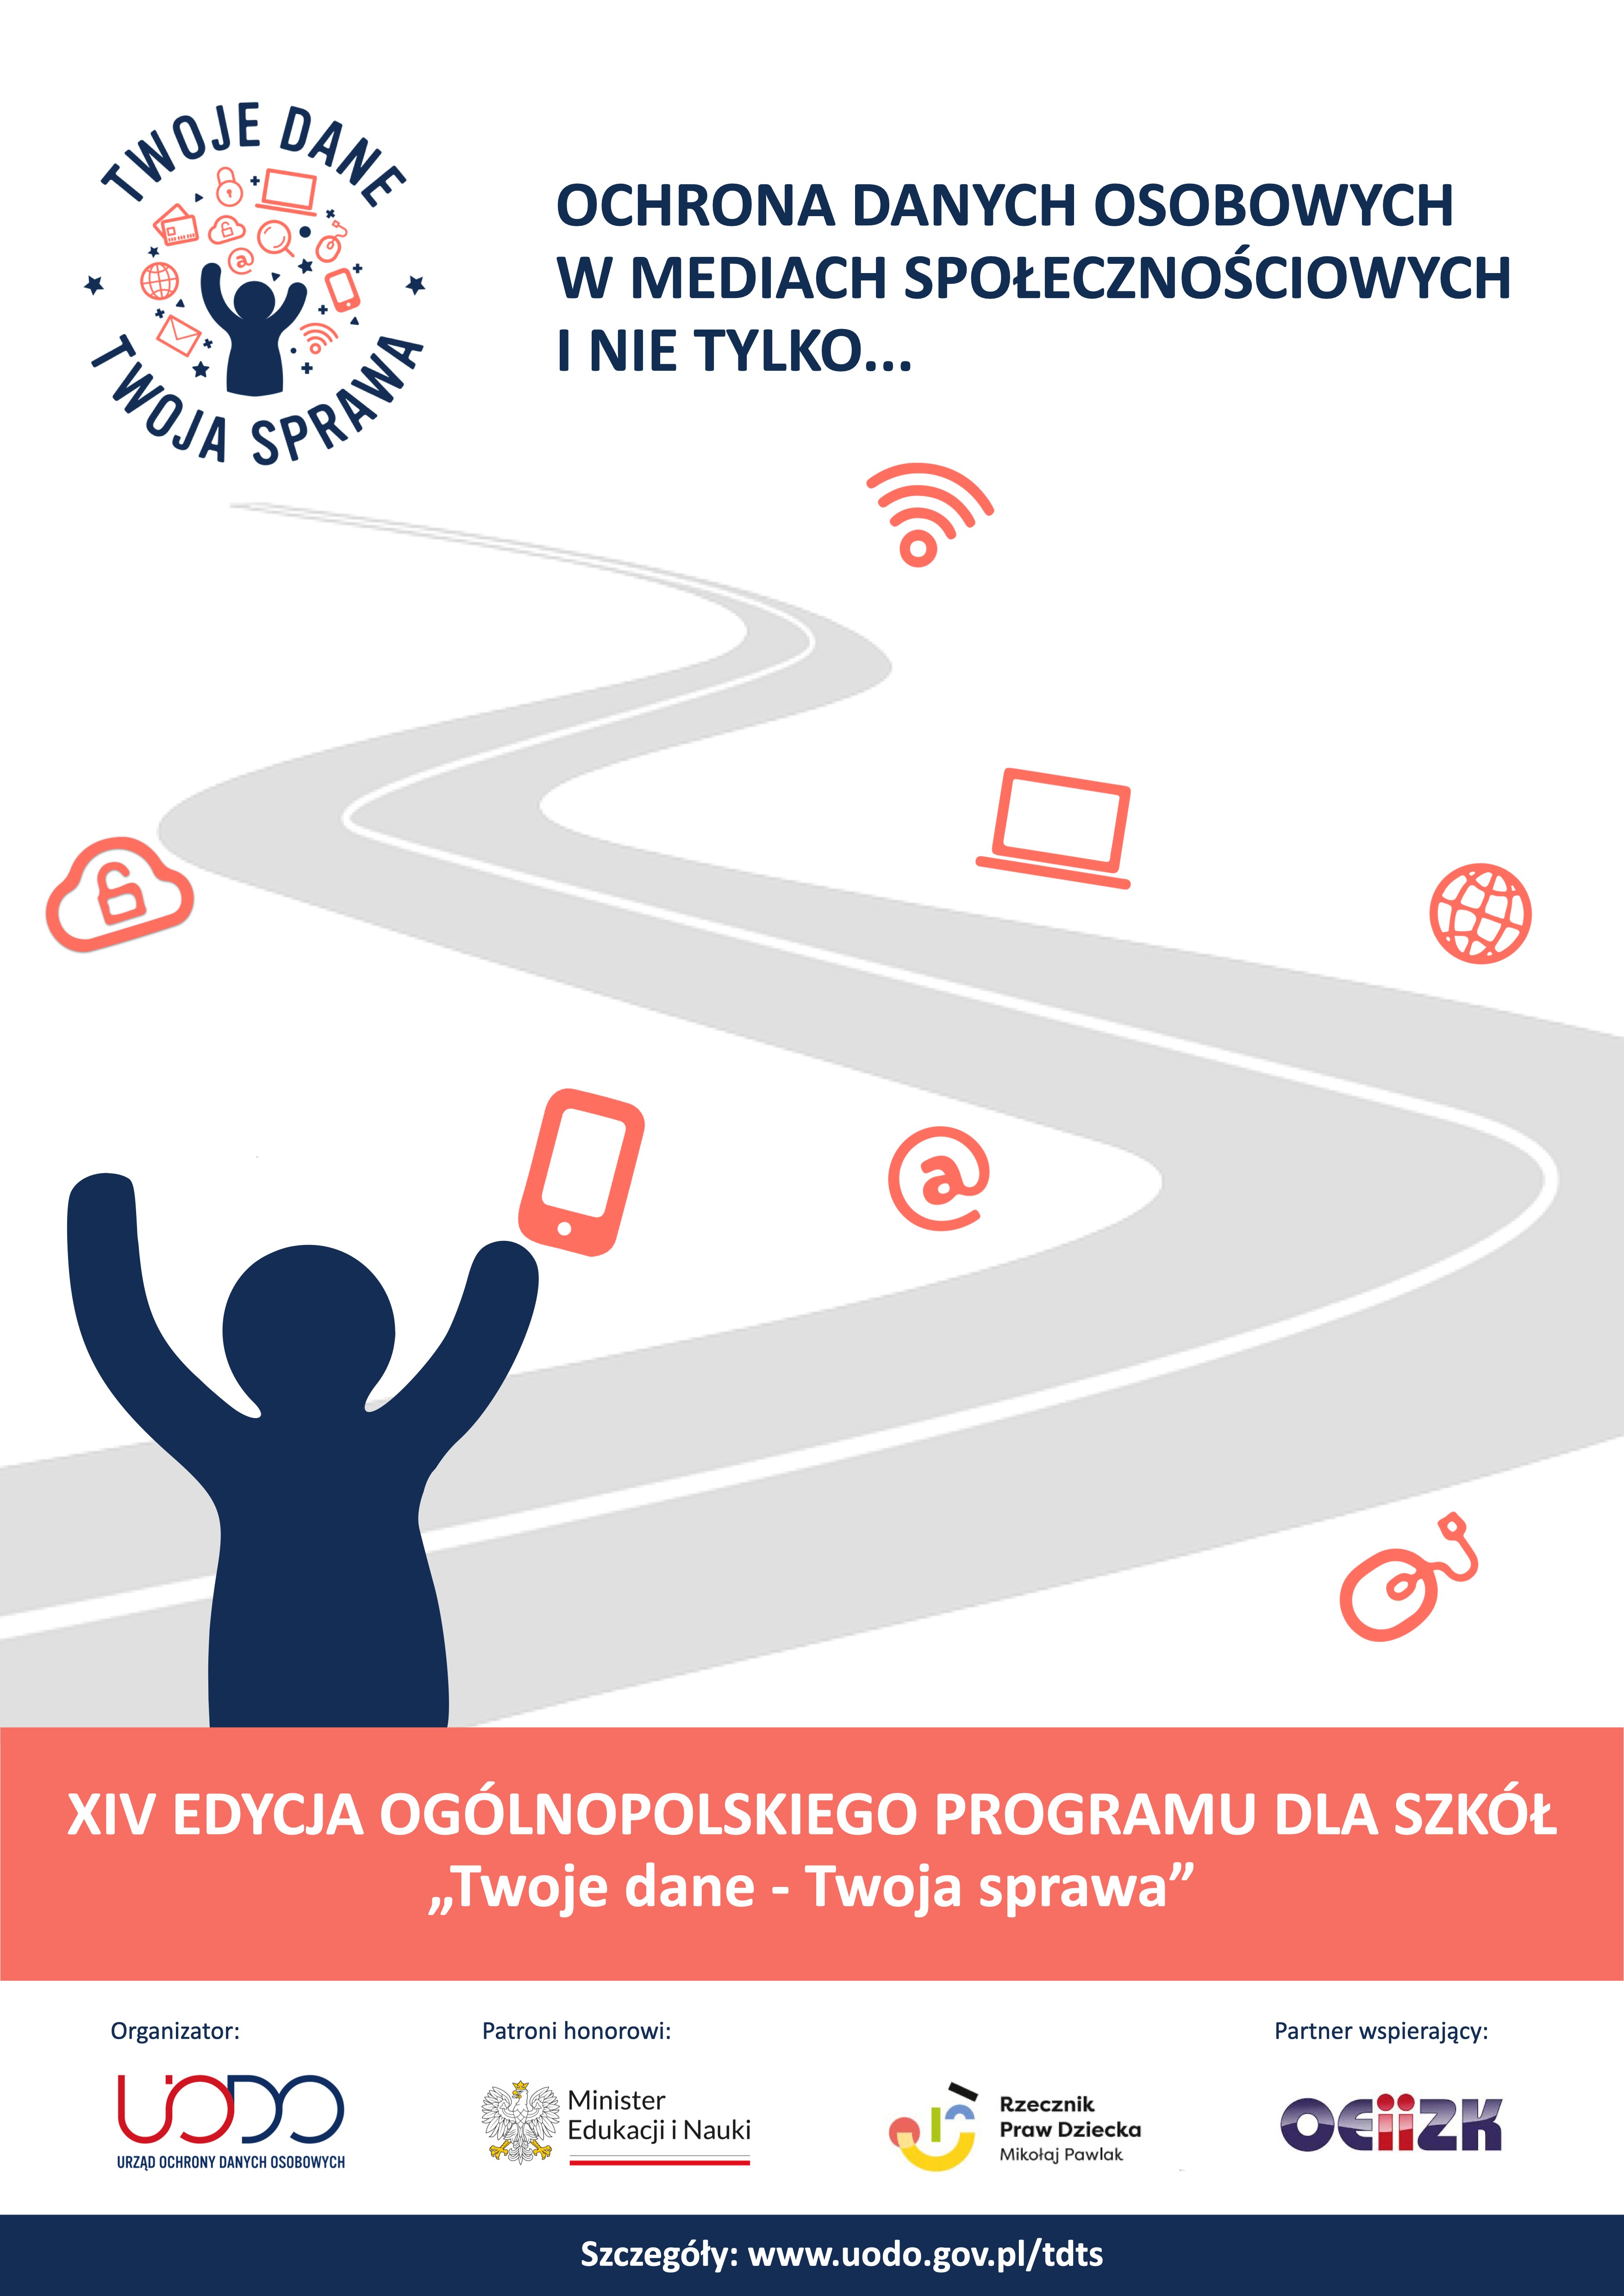 Infografika przedstawia hasło przewodnie XIV edycji programu edukacyjnego UODO Ochrona danych osobowych w midiach społeczenościowych i nie tylko oraz informację, że organizatorem jest UODO, patronem honorowych MEiN i RPD, a partnerem wspierającym OEZIIK